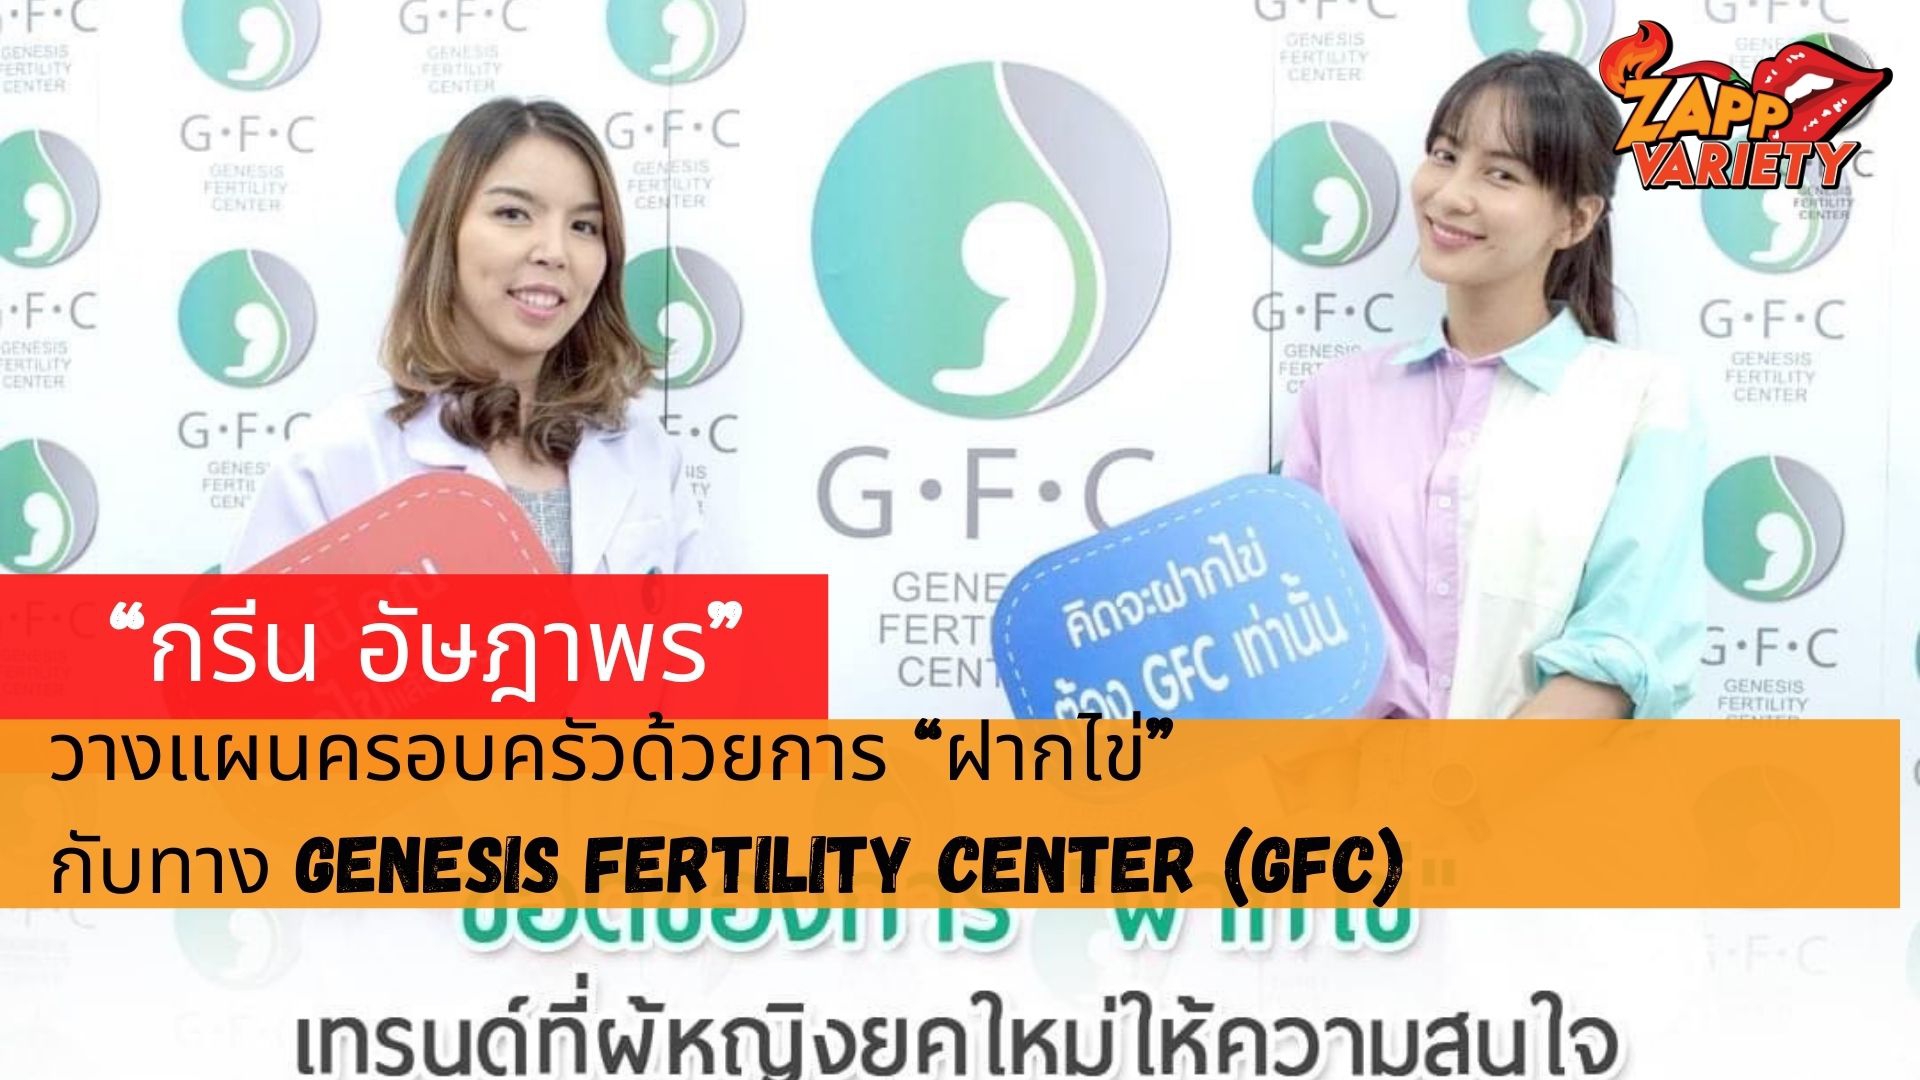 มองการณ์ไกล กรีน อัษฎาพร วางแผนครอบครัวไว้เพื่ออนาคตพึ่งวิธีทางการแพทย์ด้วยการ”ฝากไข่”    กับทาง Genesis Fertility Center (GFC)